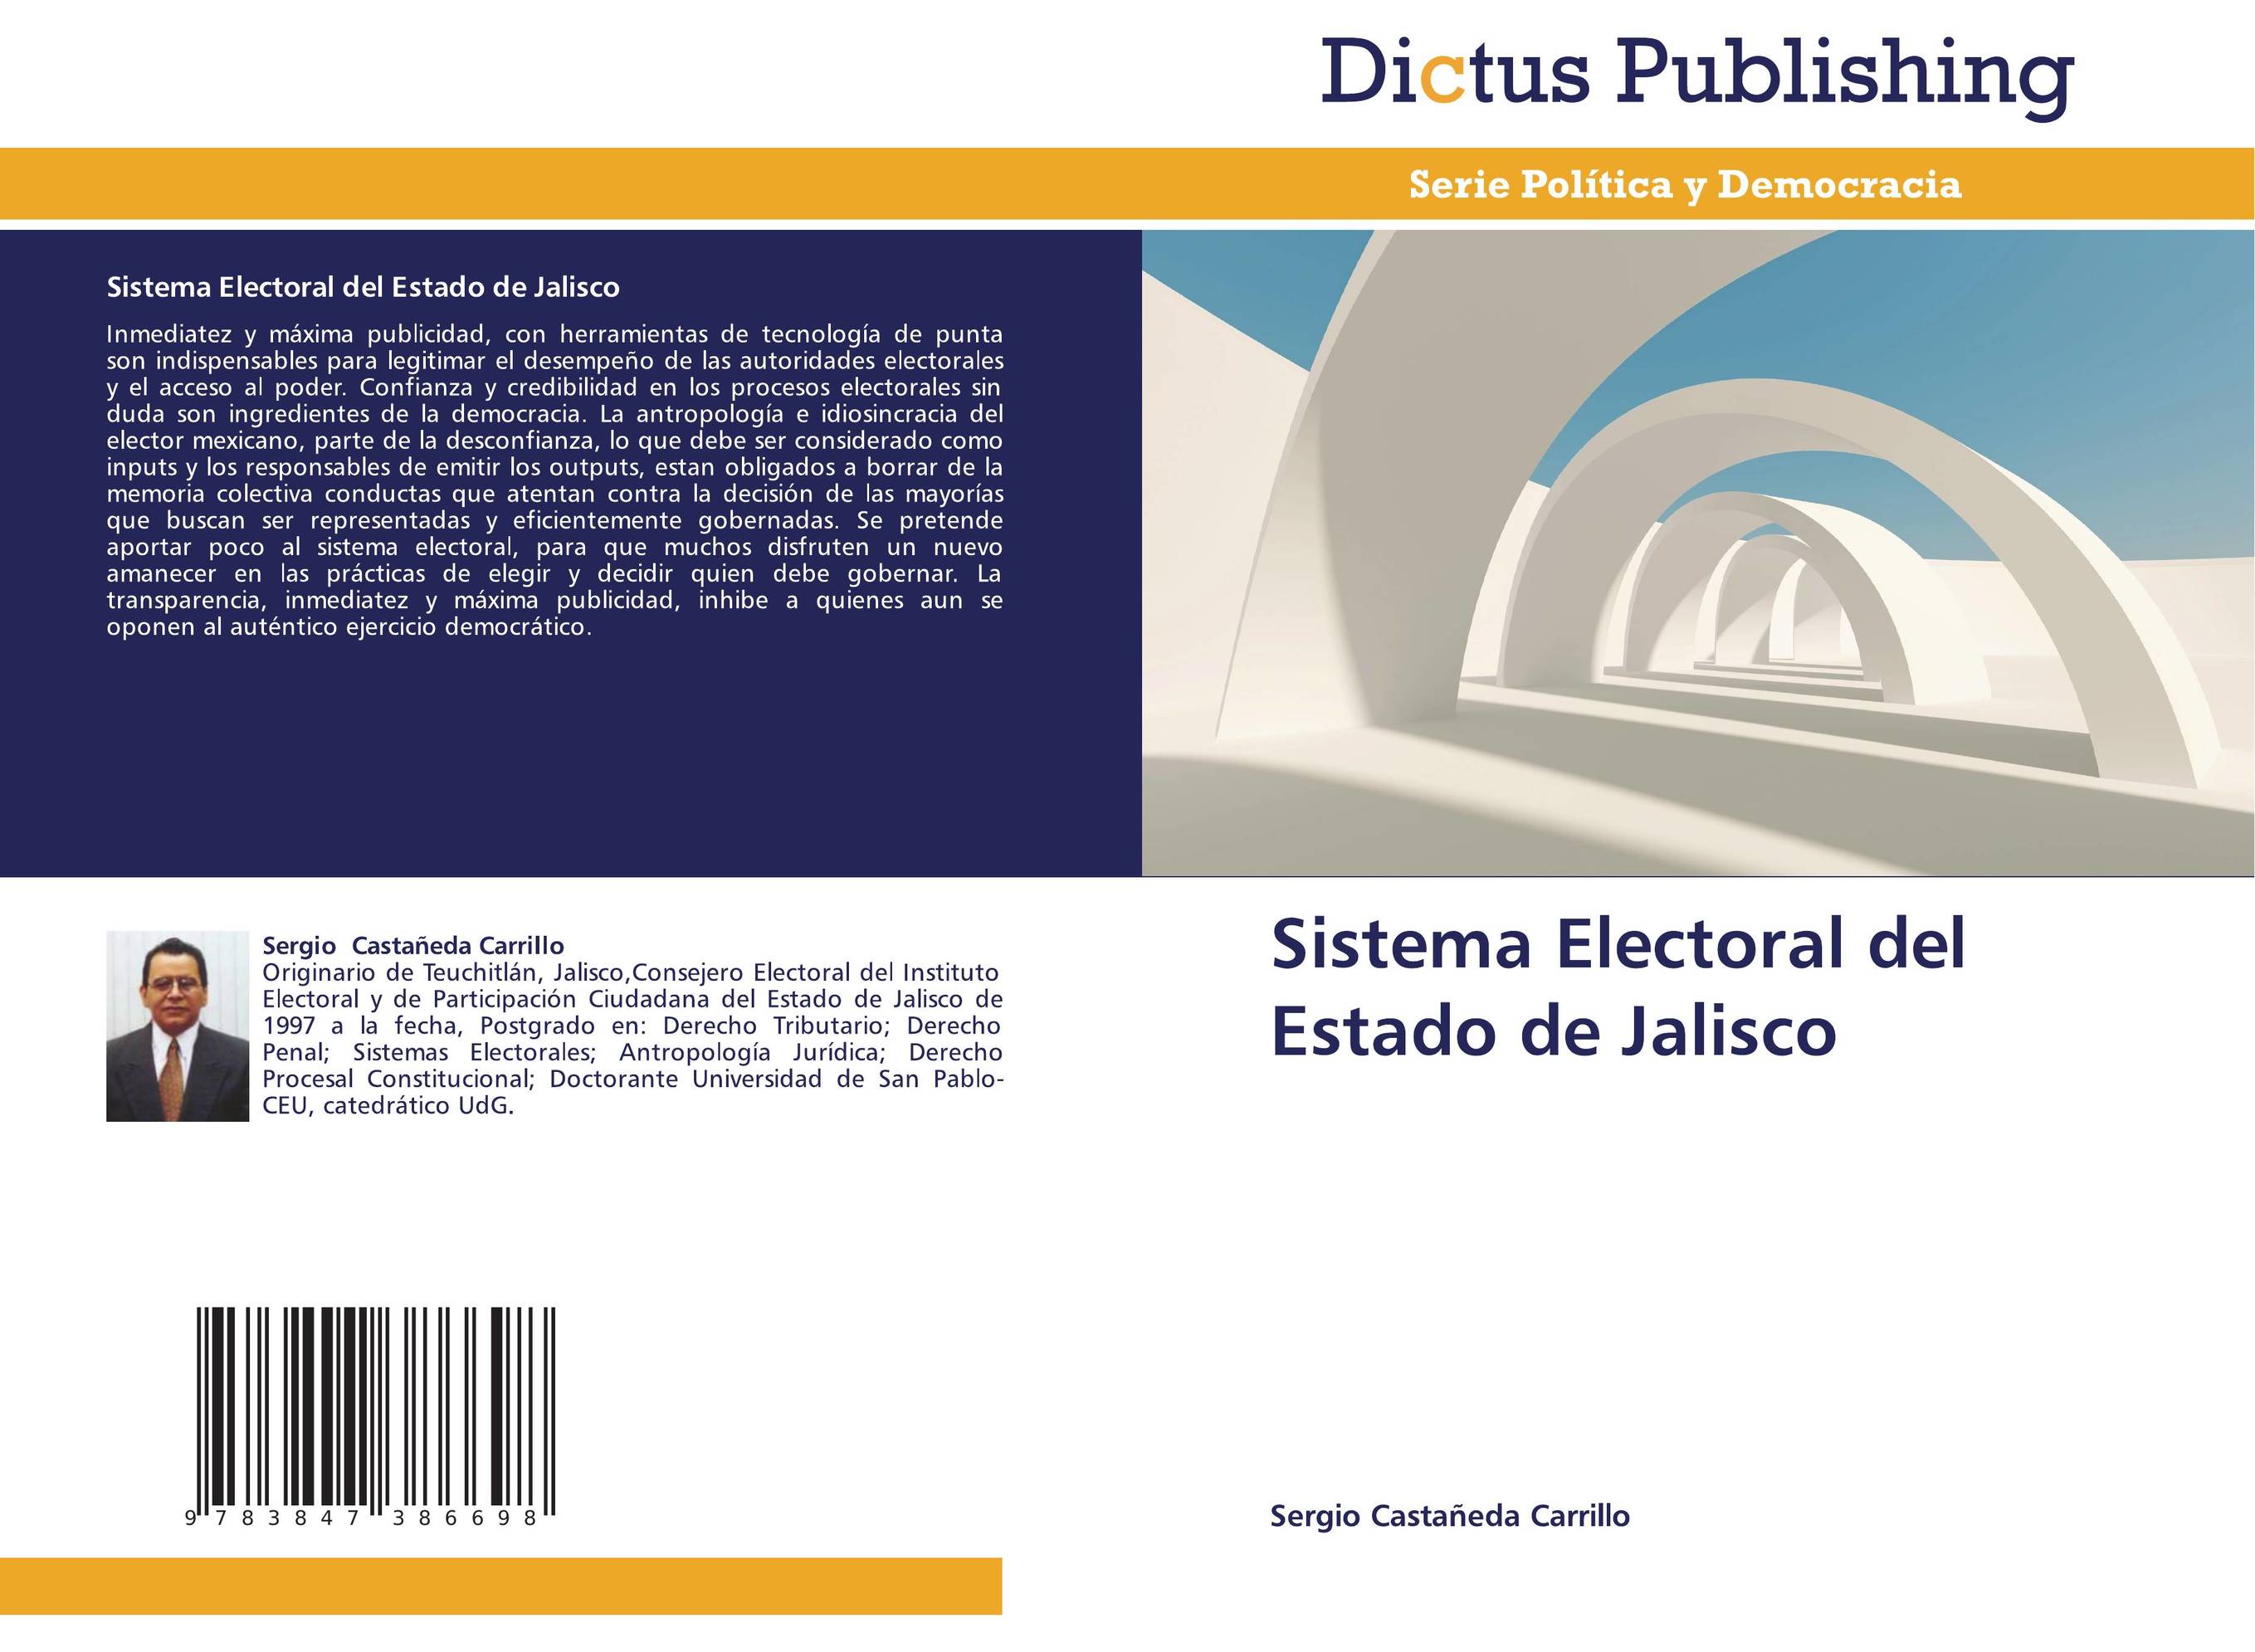 Sistema Electoral del Estado de Jalisco